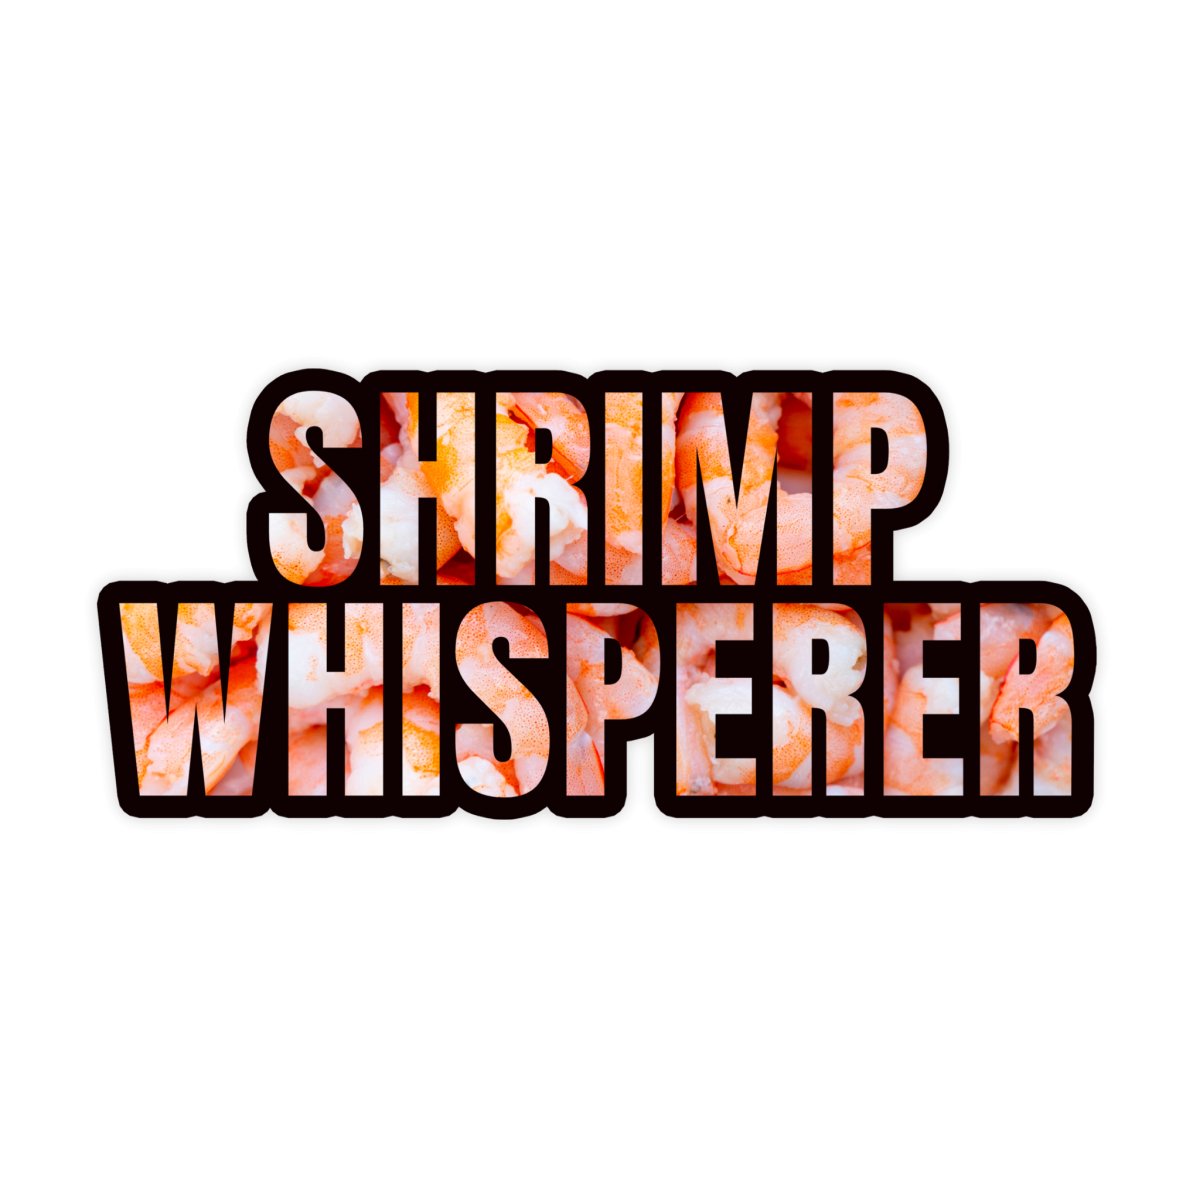 Shrimp Whisperer Funny Meme Sticker - stickerbullShrimp Whisperer Funny Meme StickerRetail StickerstickerbullstickerbullTaylor_Shrimp [#187]Shrimp Whisperer Funny Meme Sticker